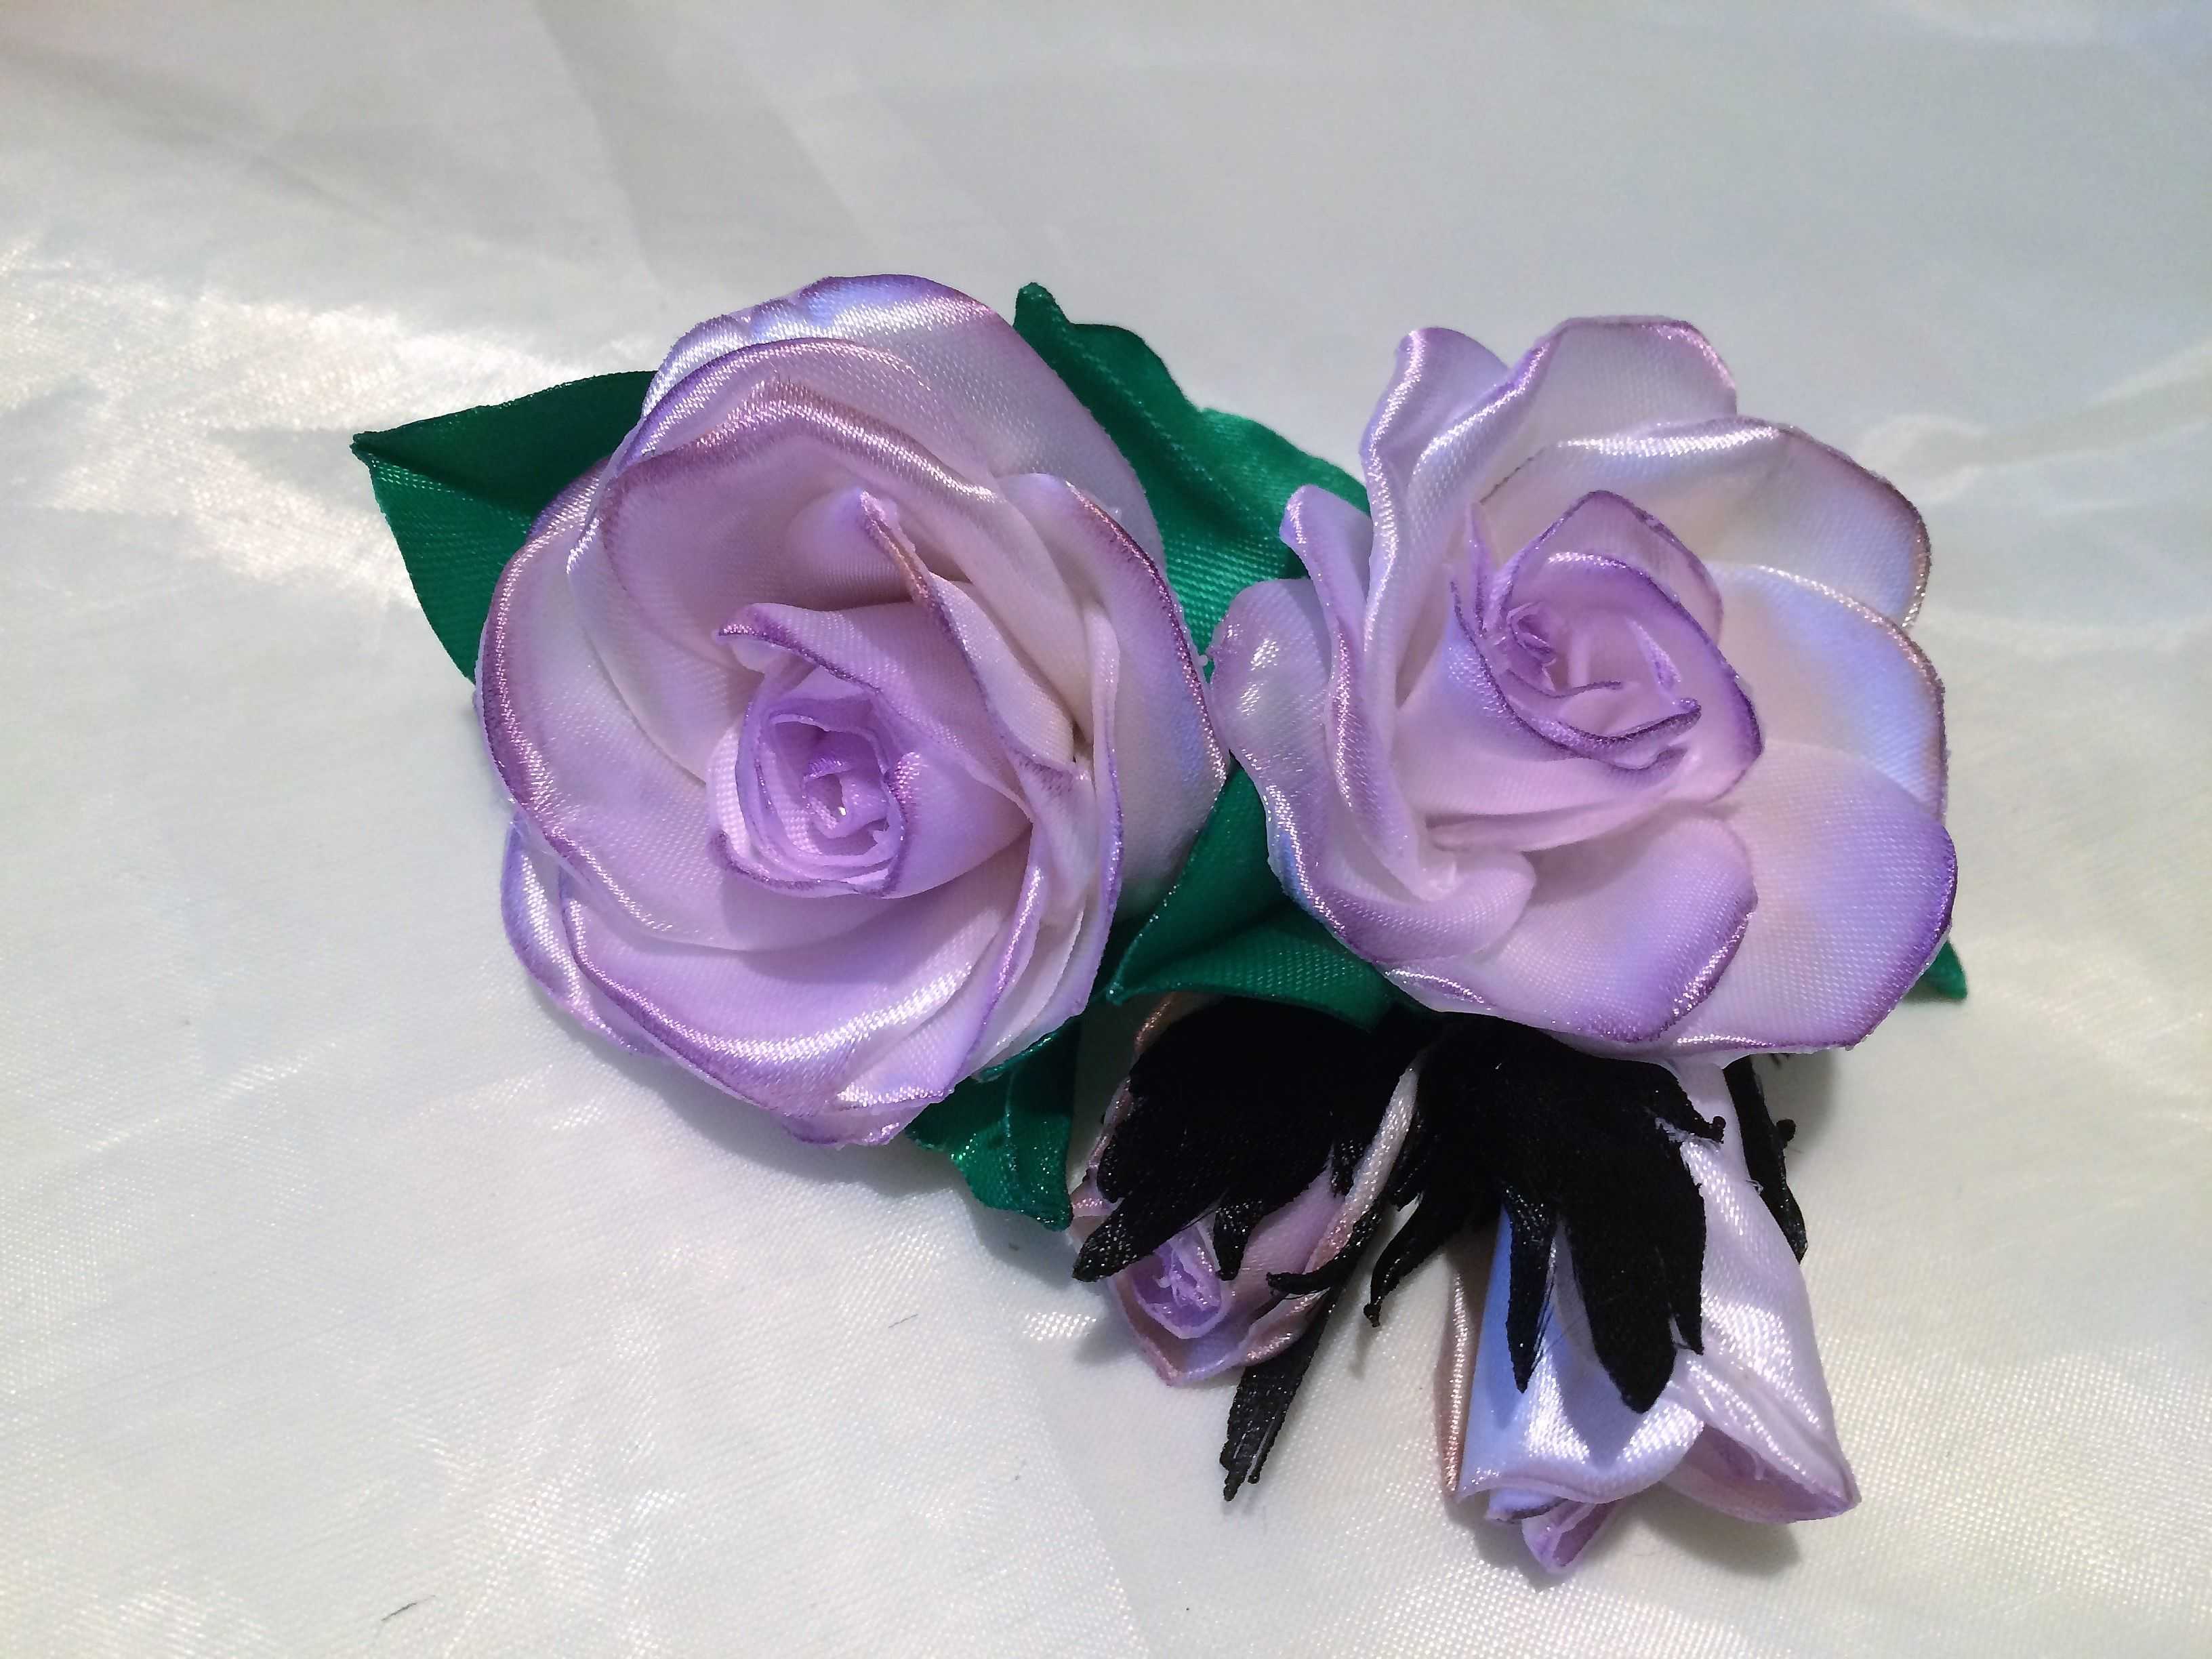 Мастер-класс украшение гильоширование мастер-класс розы из органзы ленты ткань